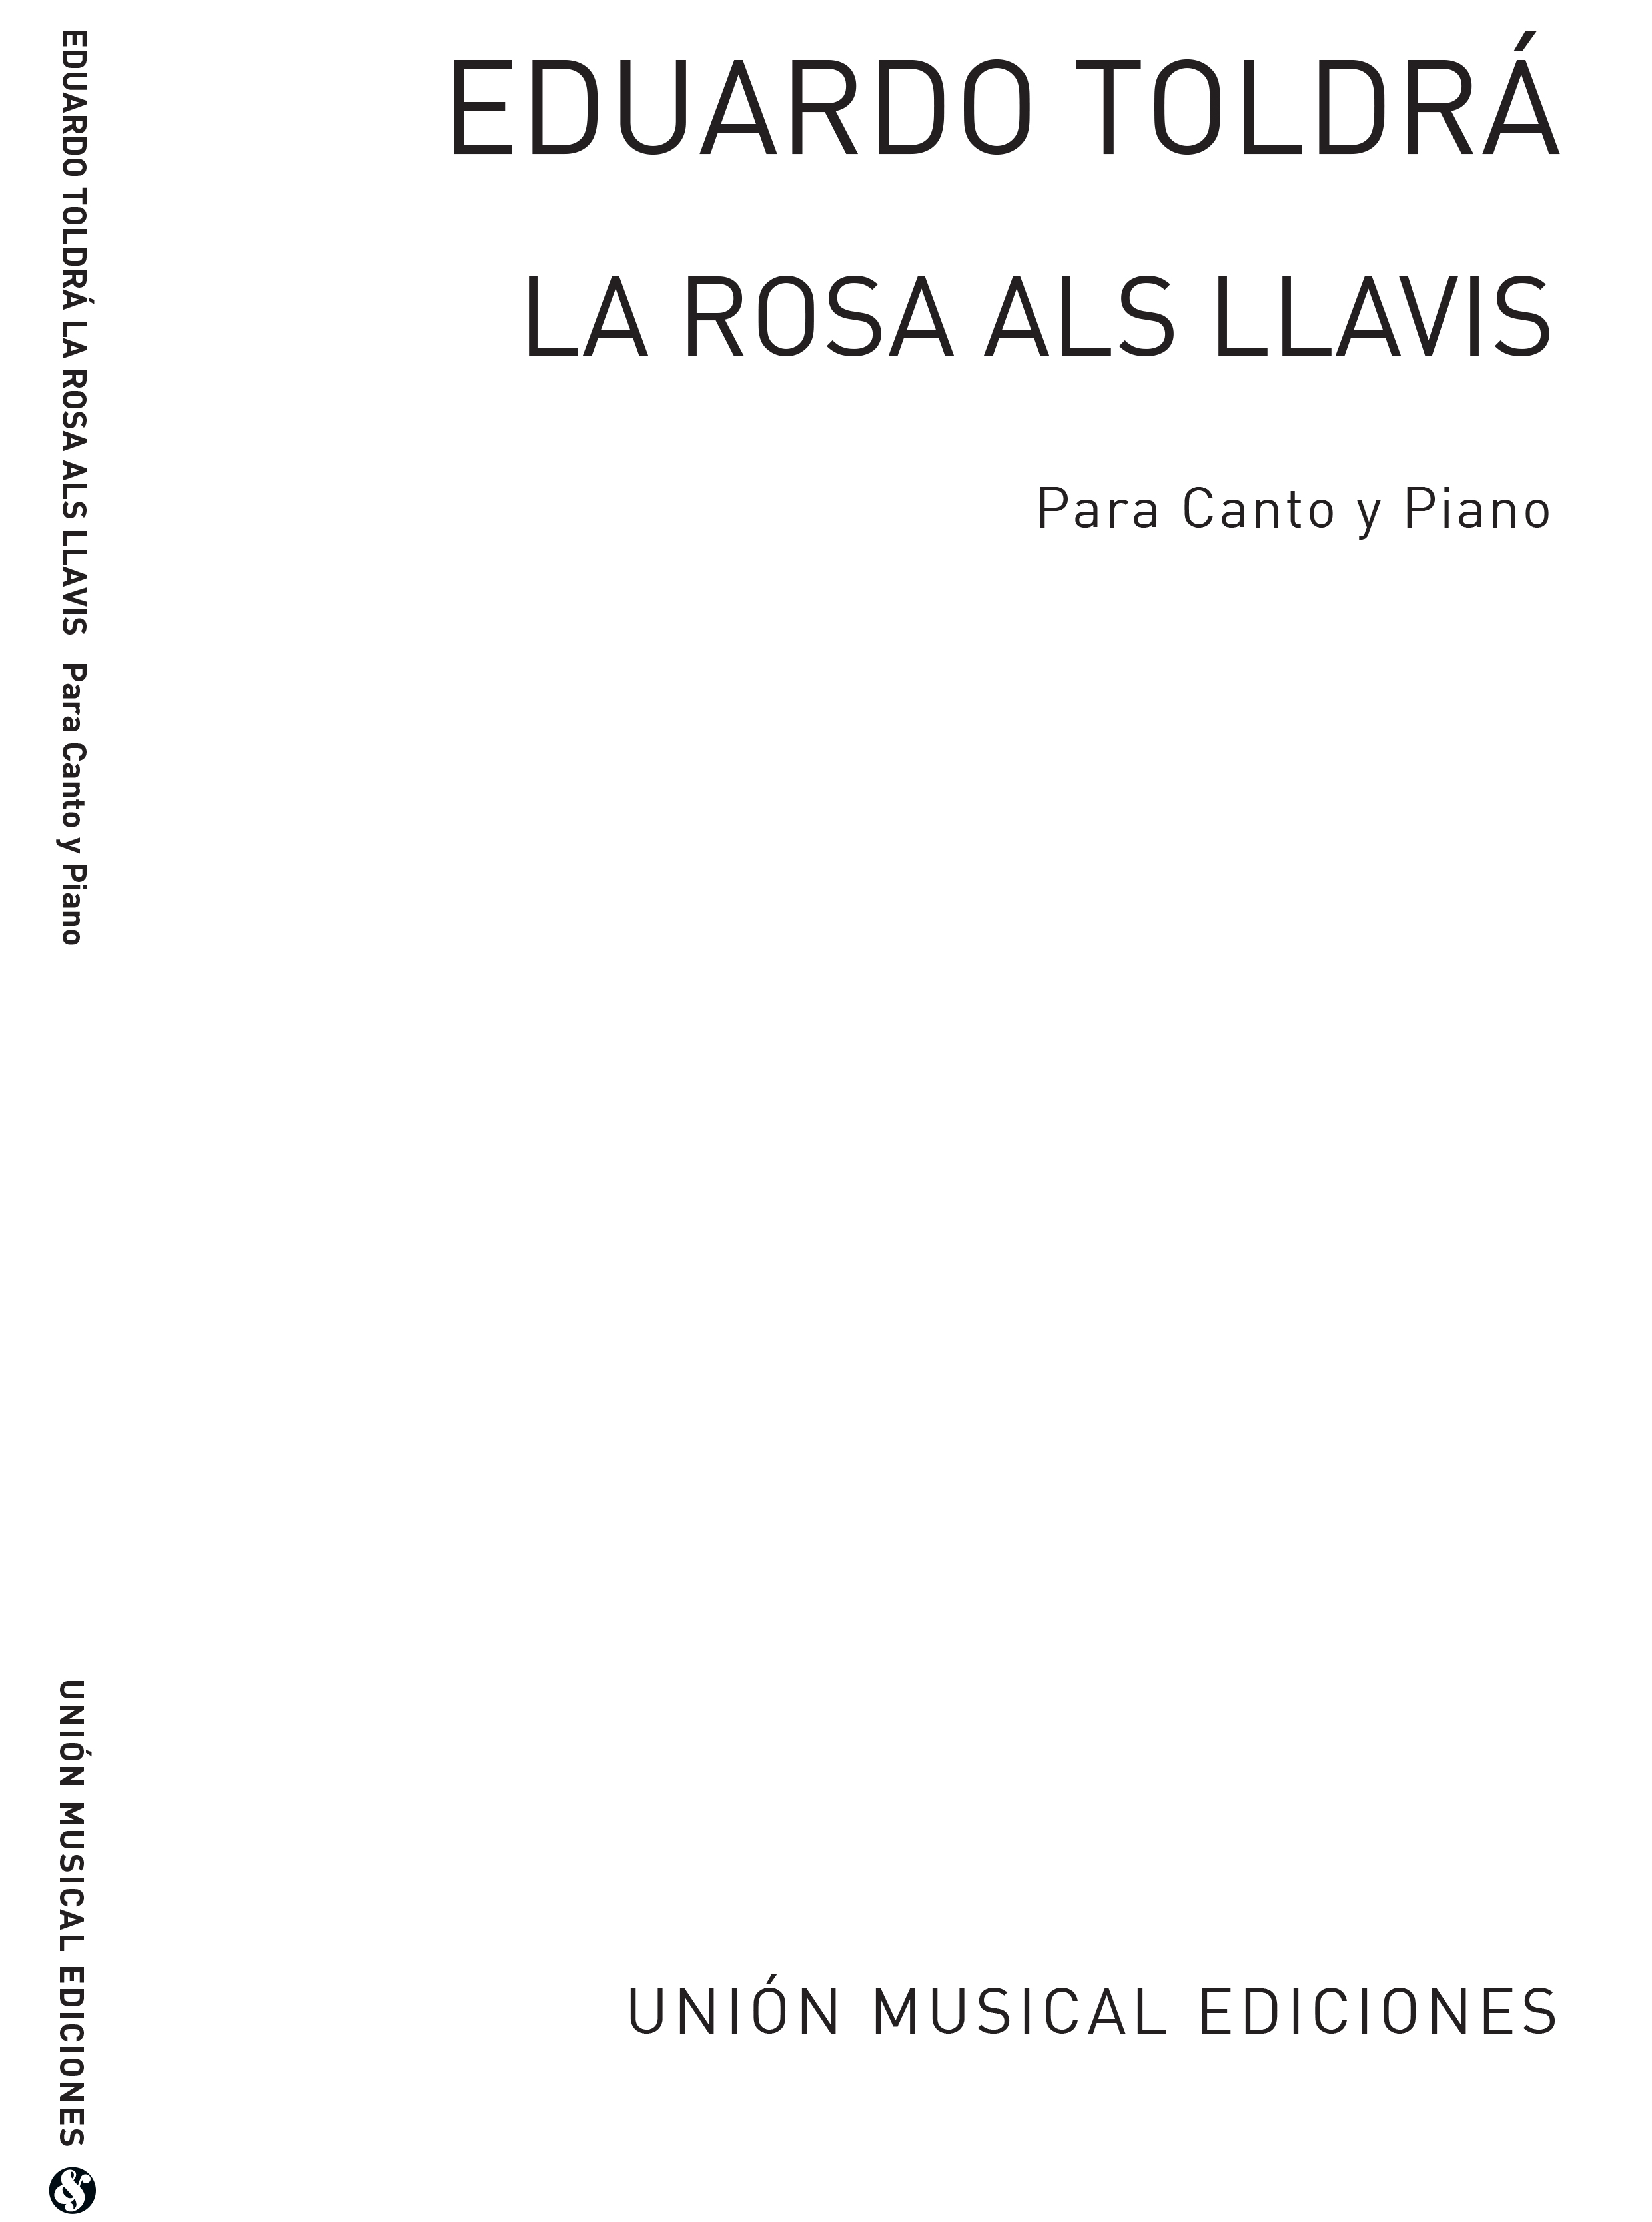 Eduardo Toldra: Toldra La Rosa Als Llavis: Voice: Mixed Songbook